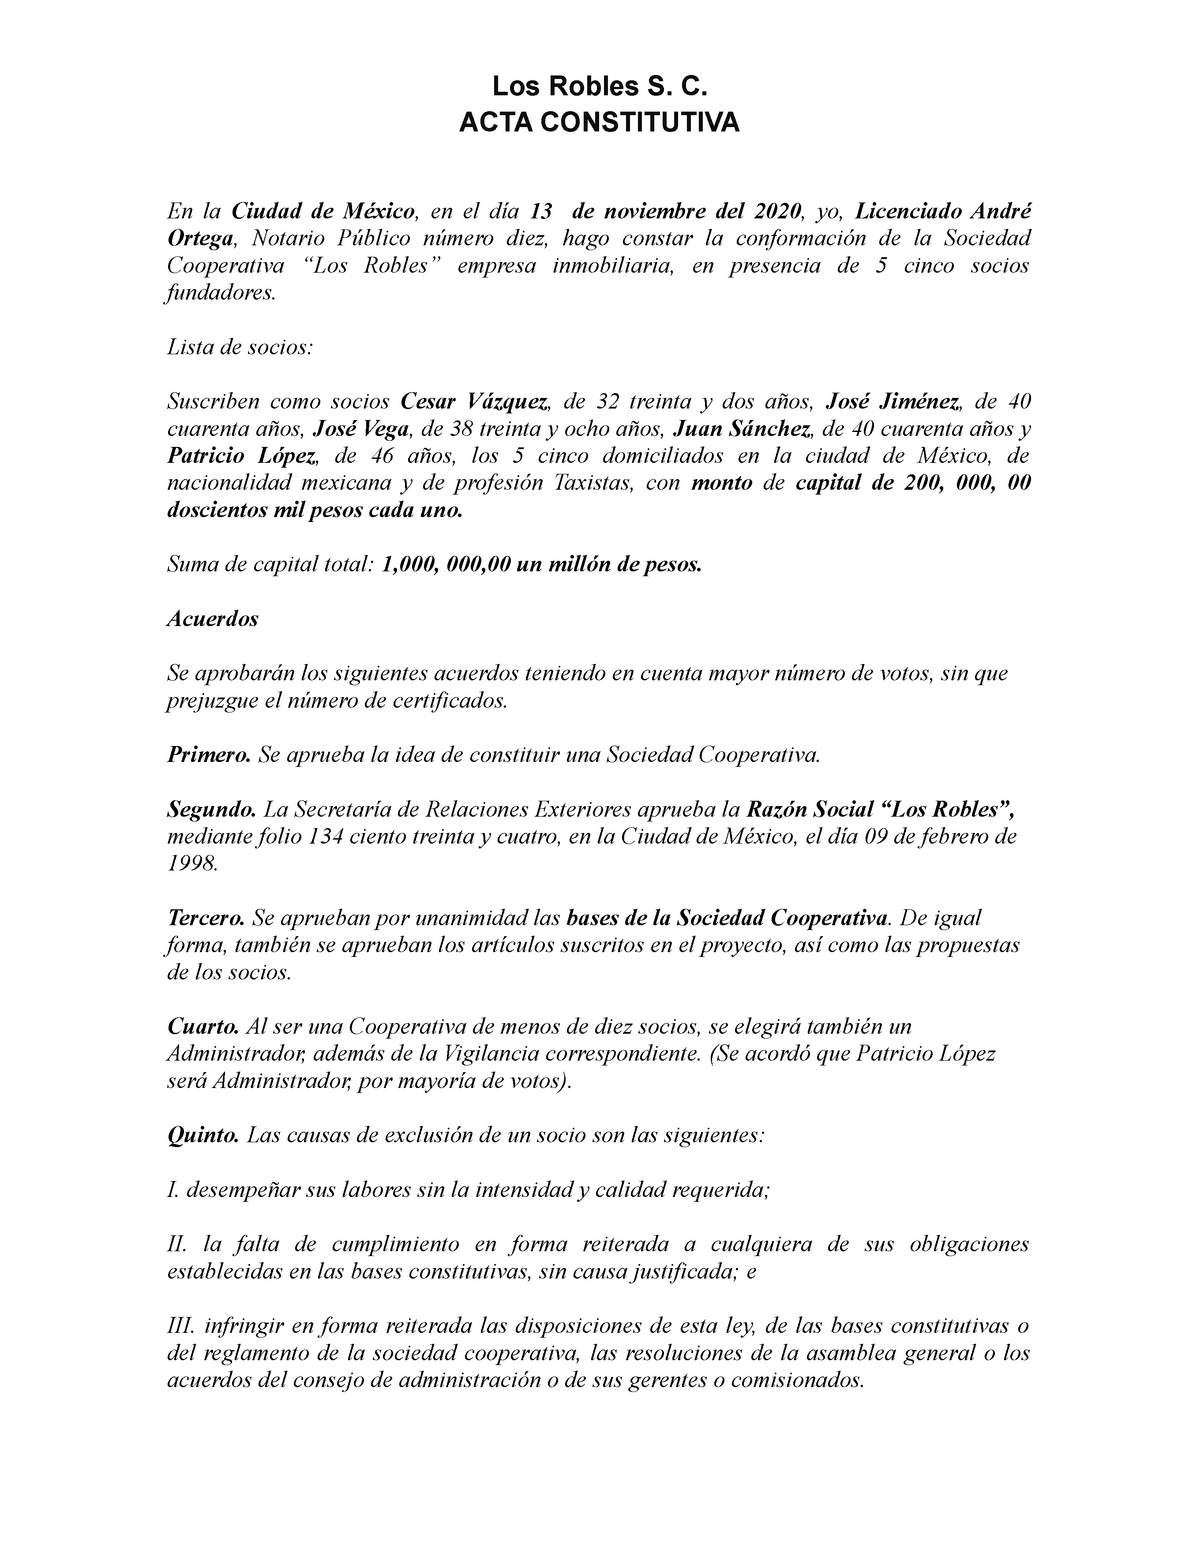 Acta Constitutiva Sociedad cooperativa (ejemplo) - Derecho Corporarivo -  UVM - Studocu